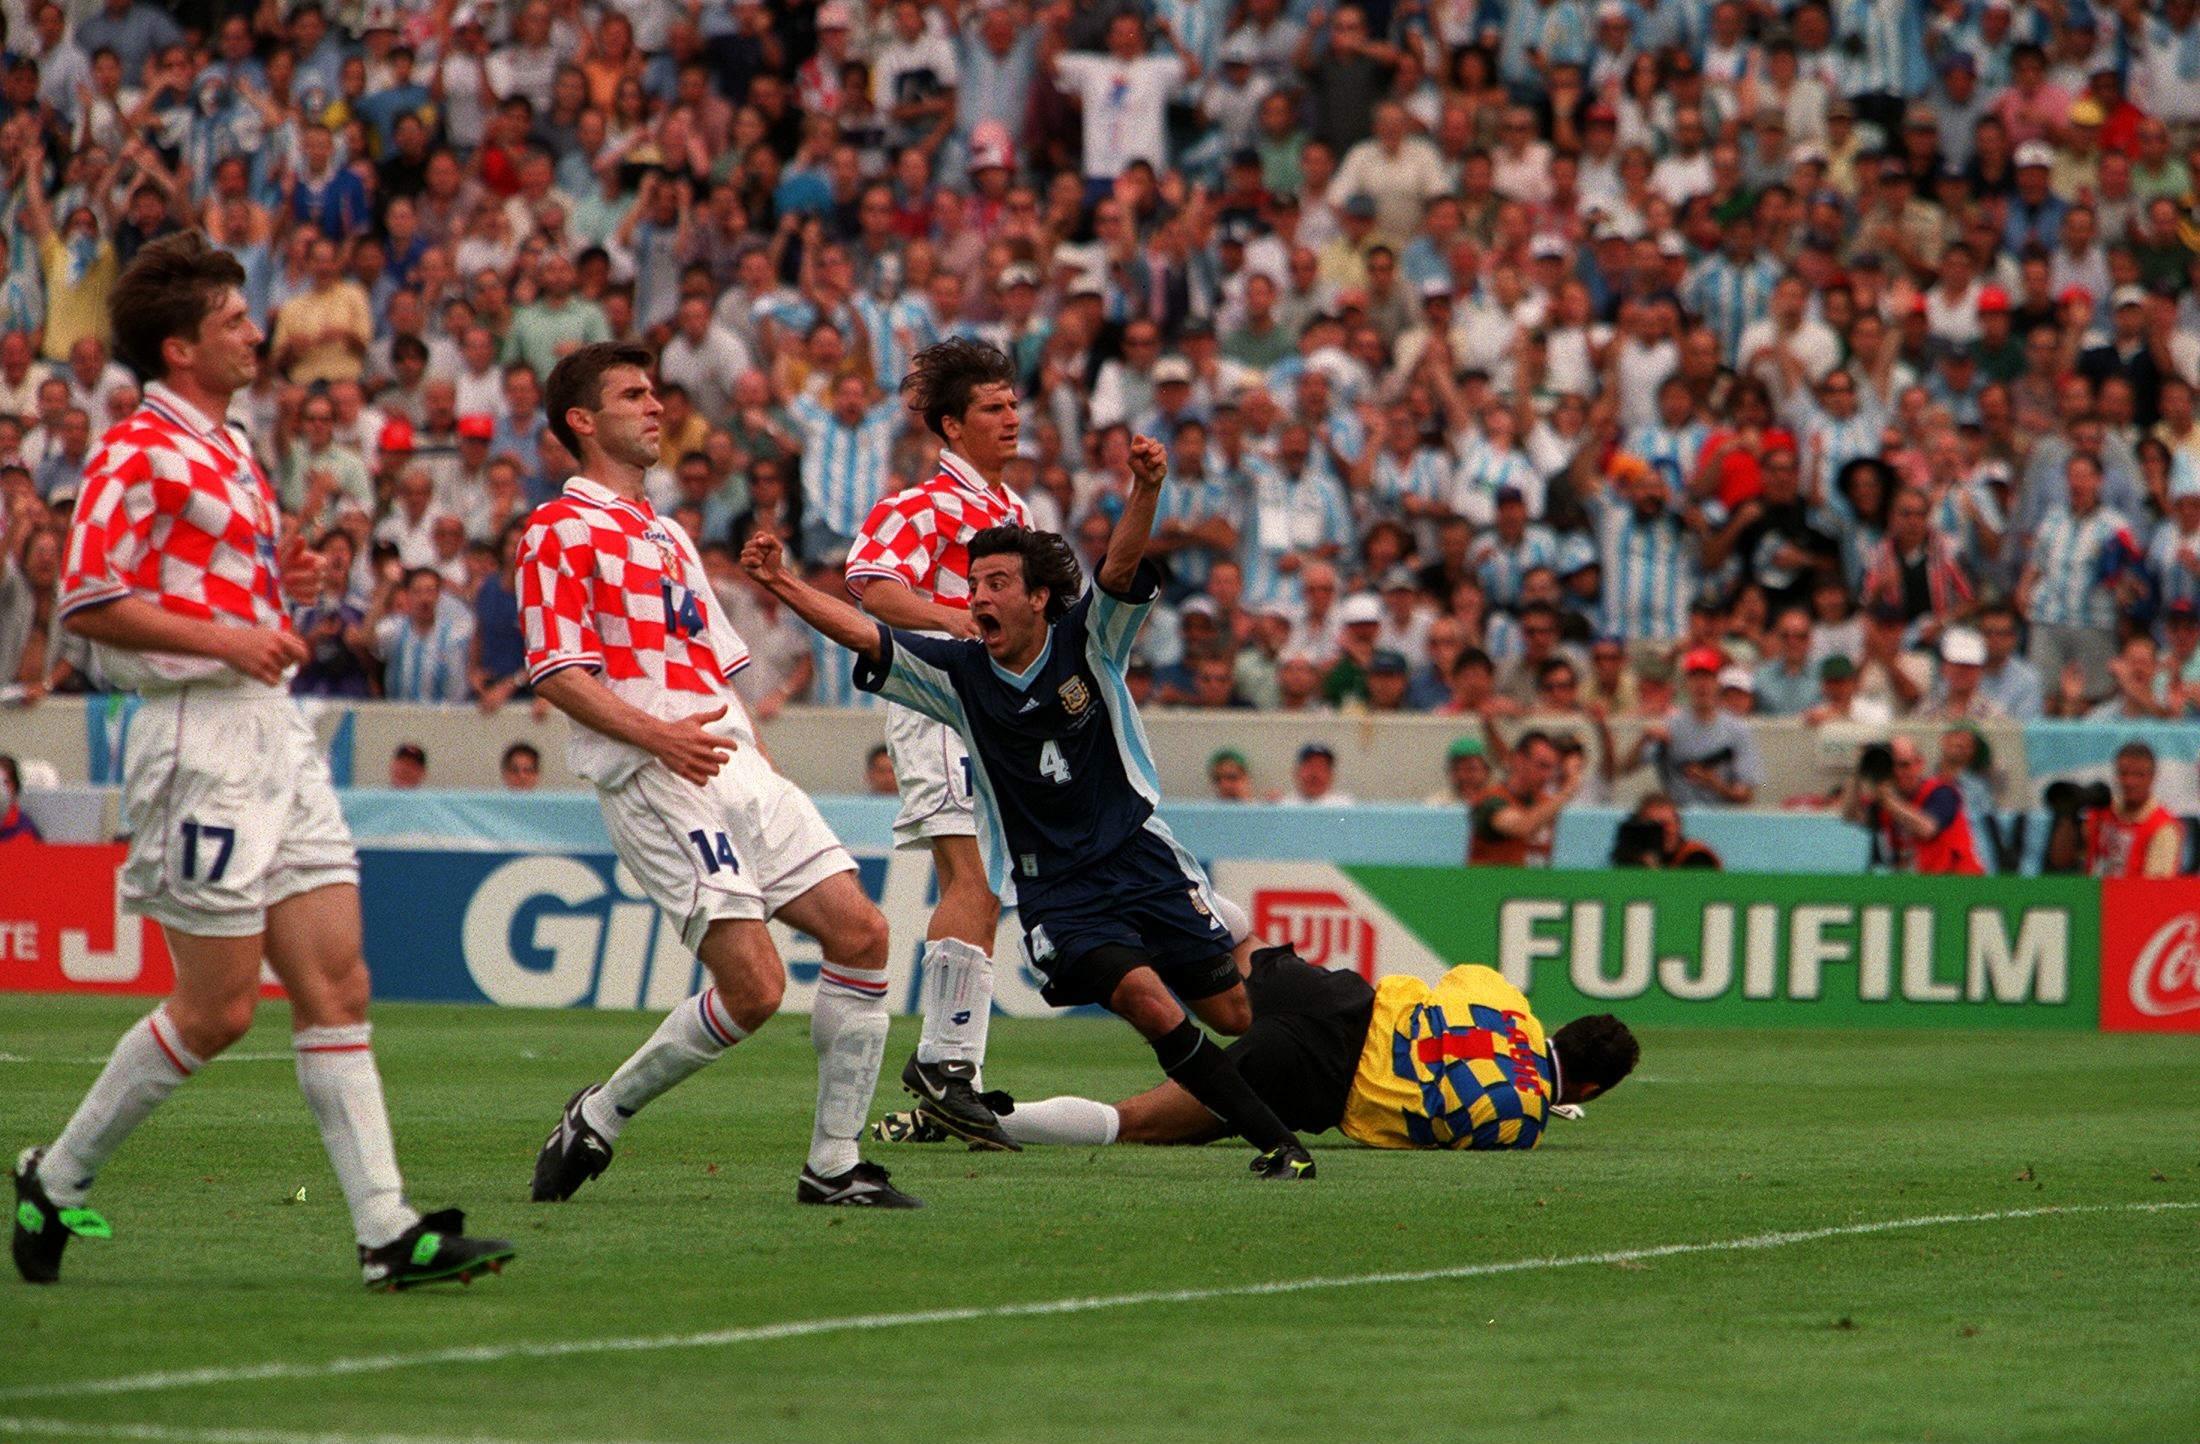 El gol de Pineda en el cruce en Francia 98 (THIERRY ORBAN/Sygma via Getty Images)